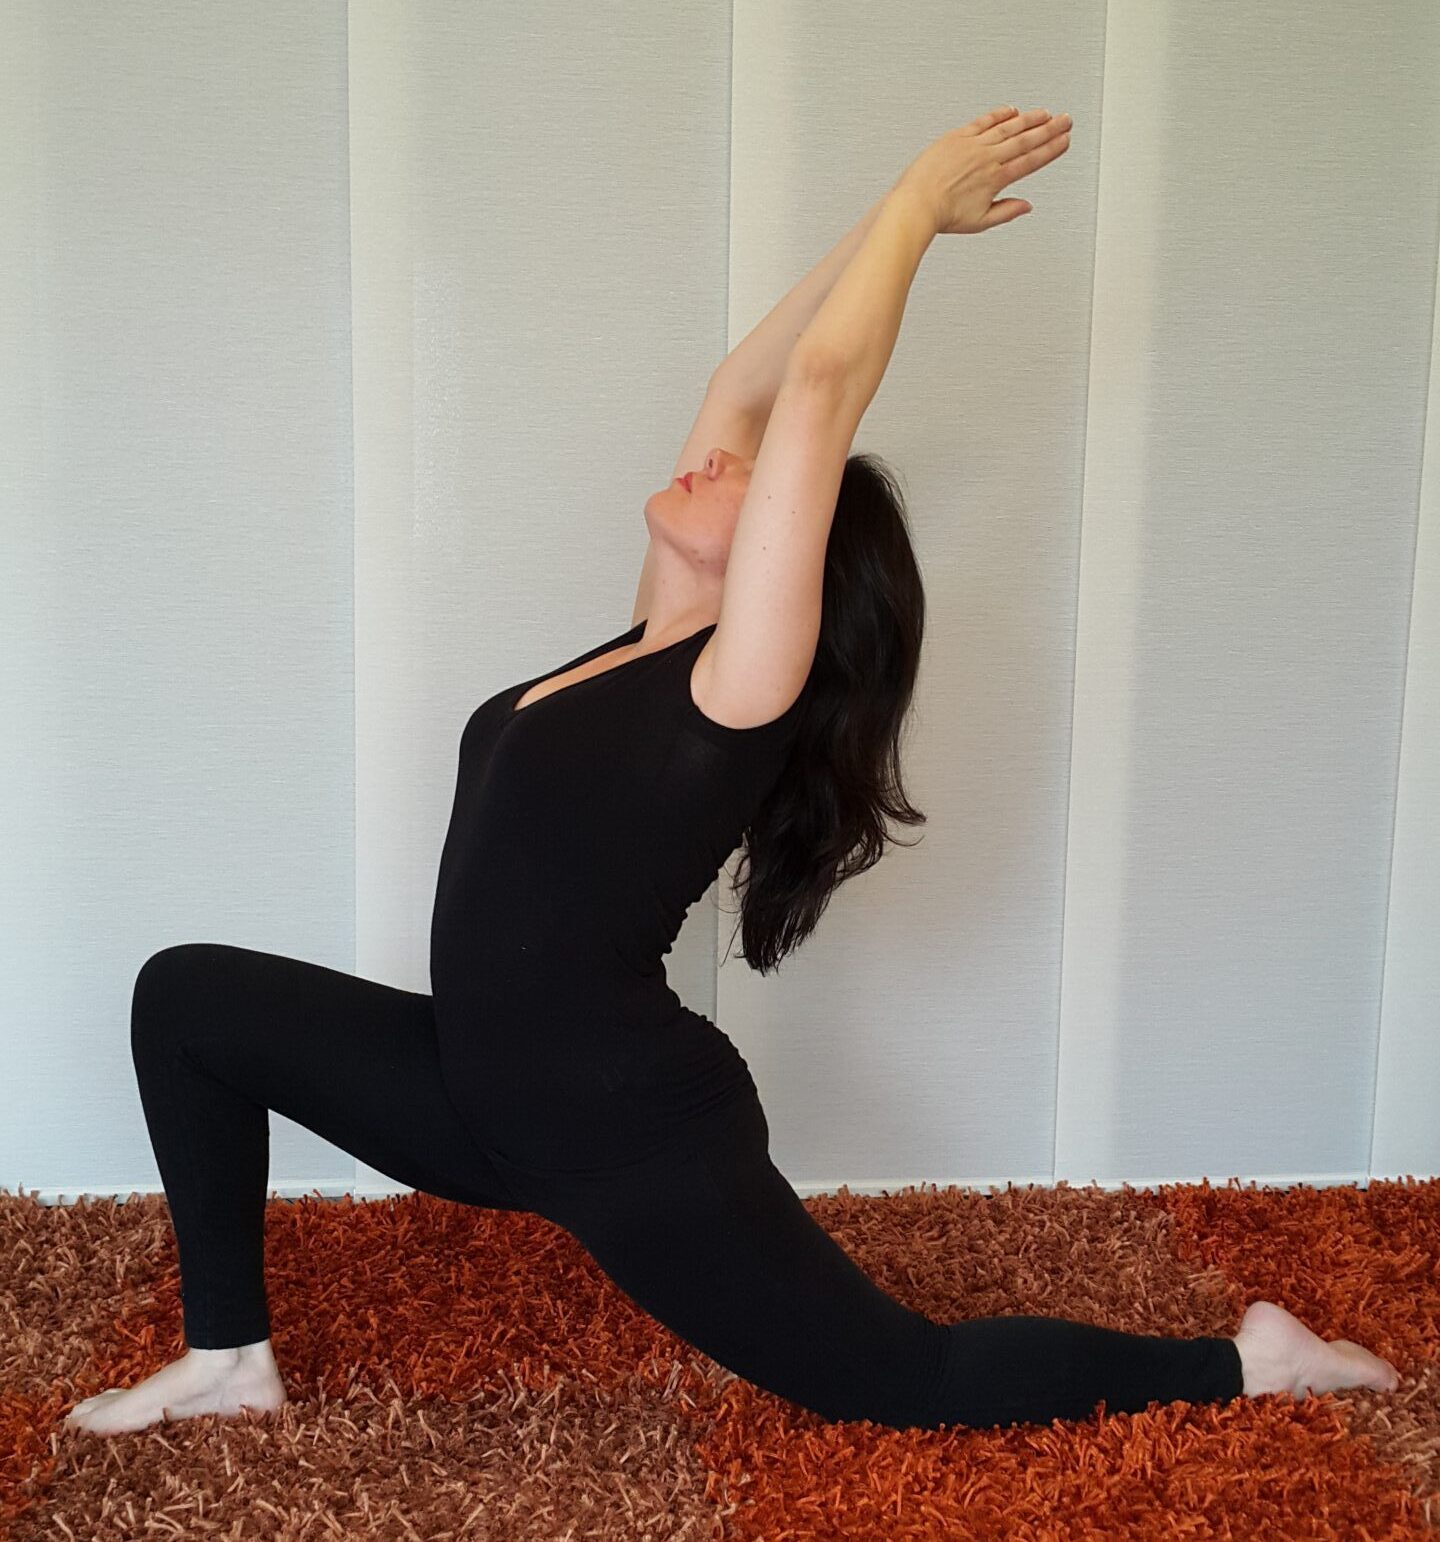 postura-de-yoga-drasylviamoran-archivo-propio